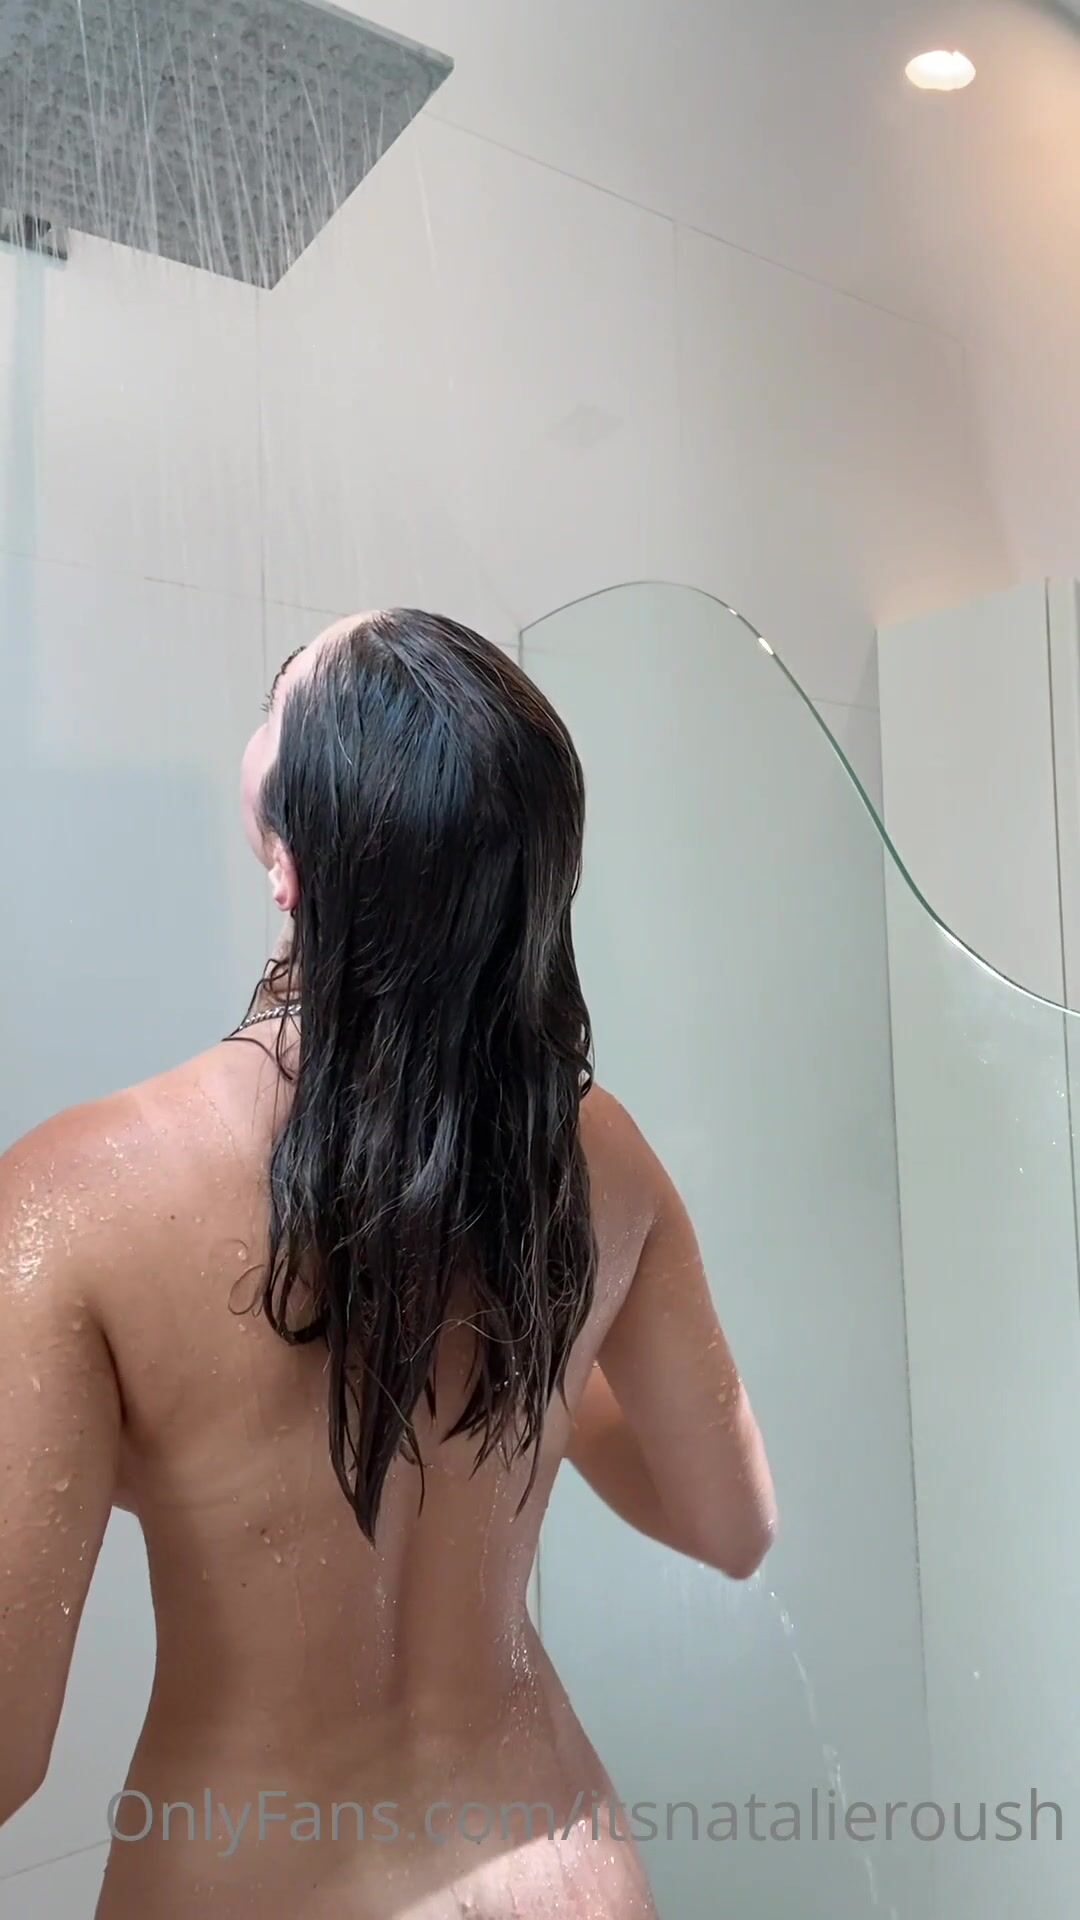 Natalie Roush-Good Morning boobies Shower ppv